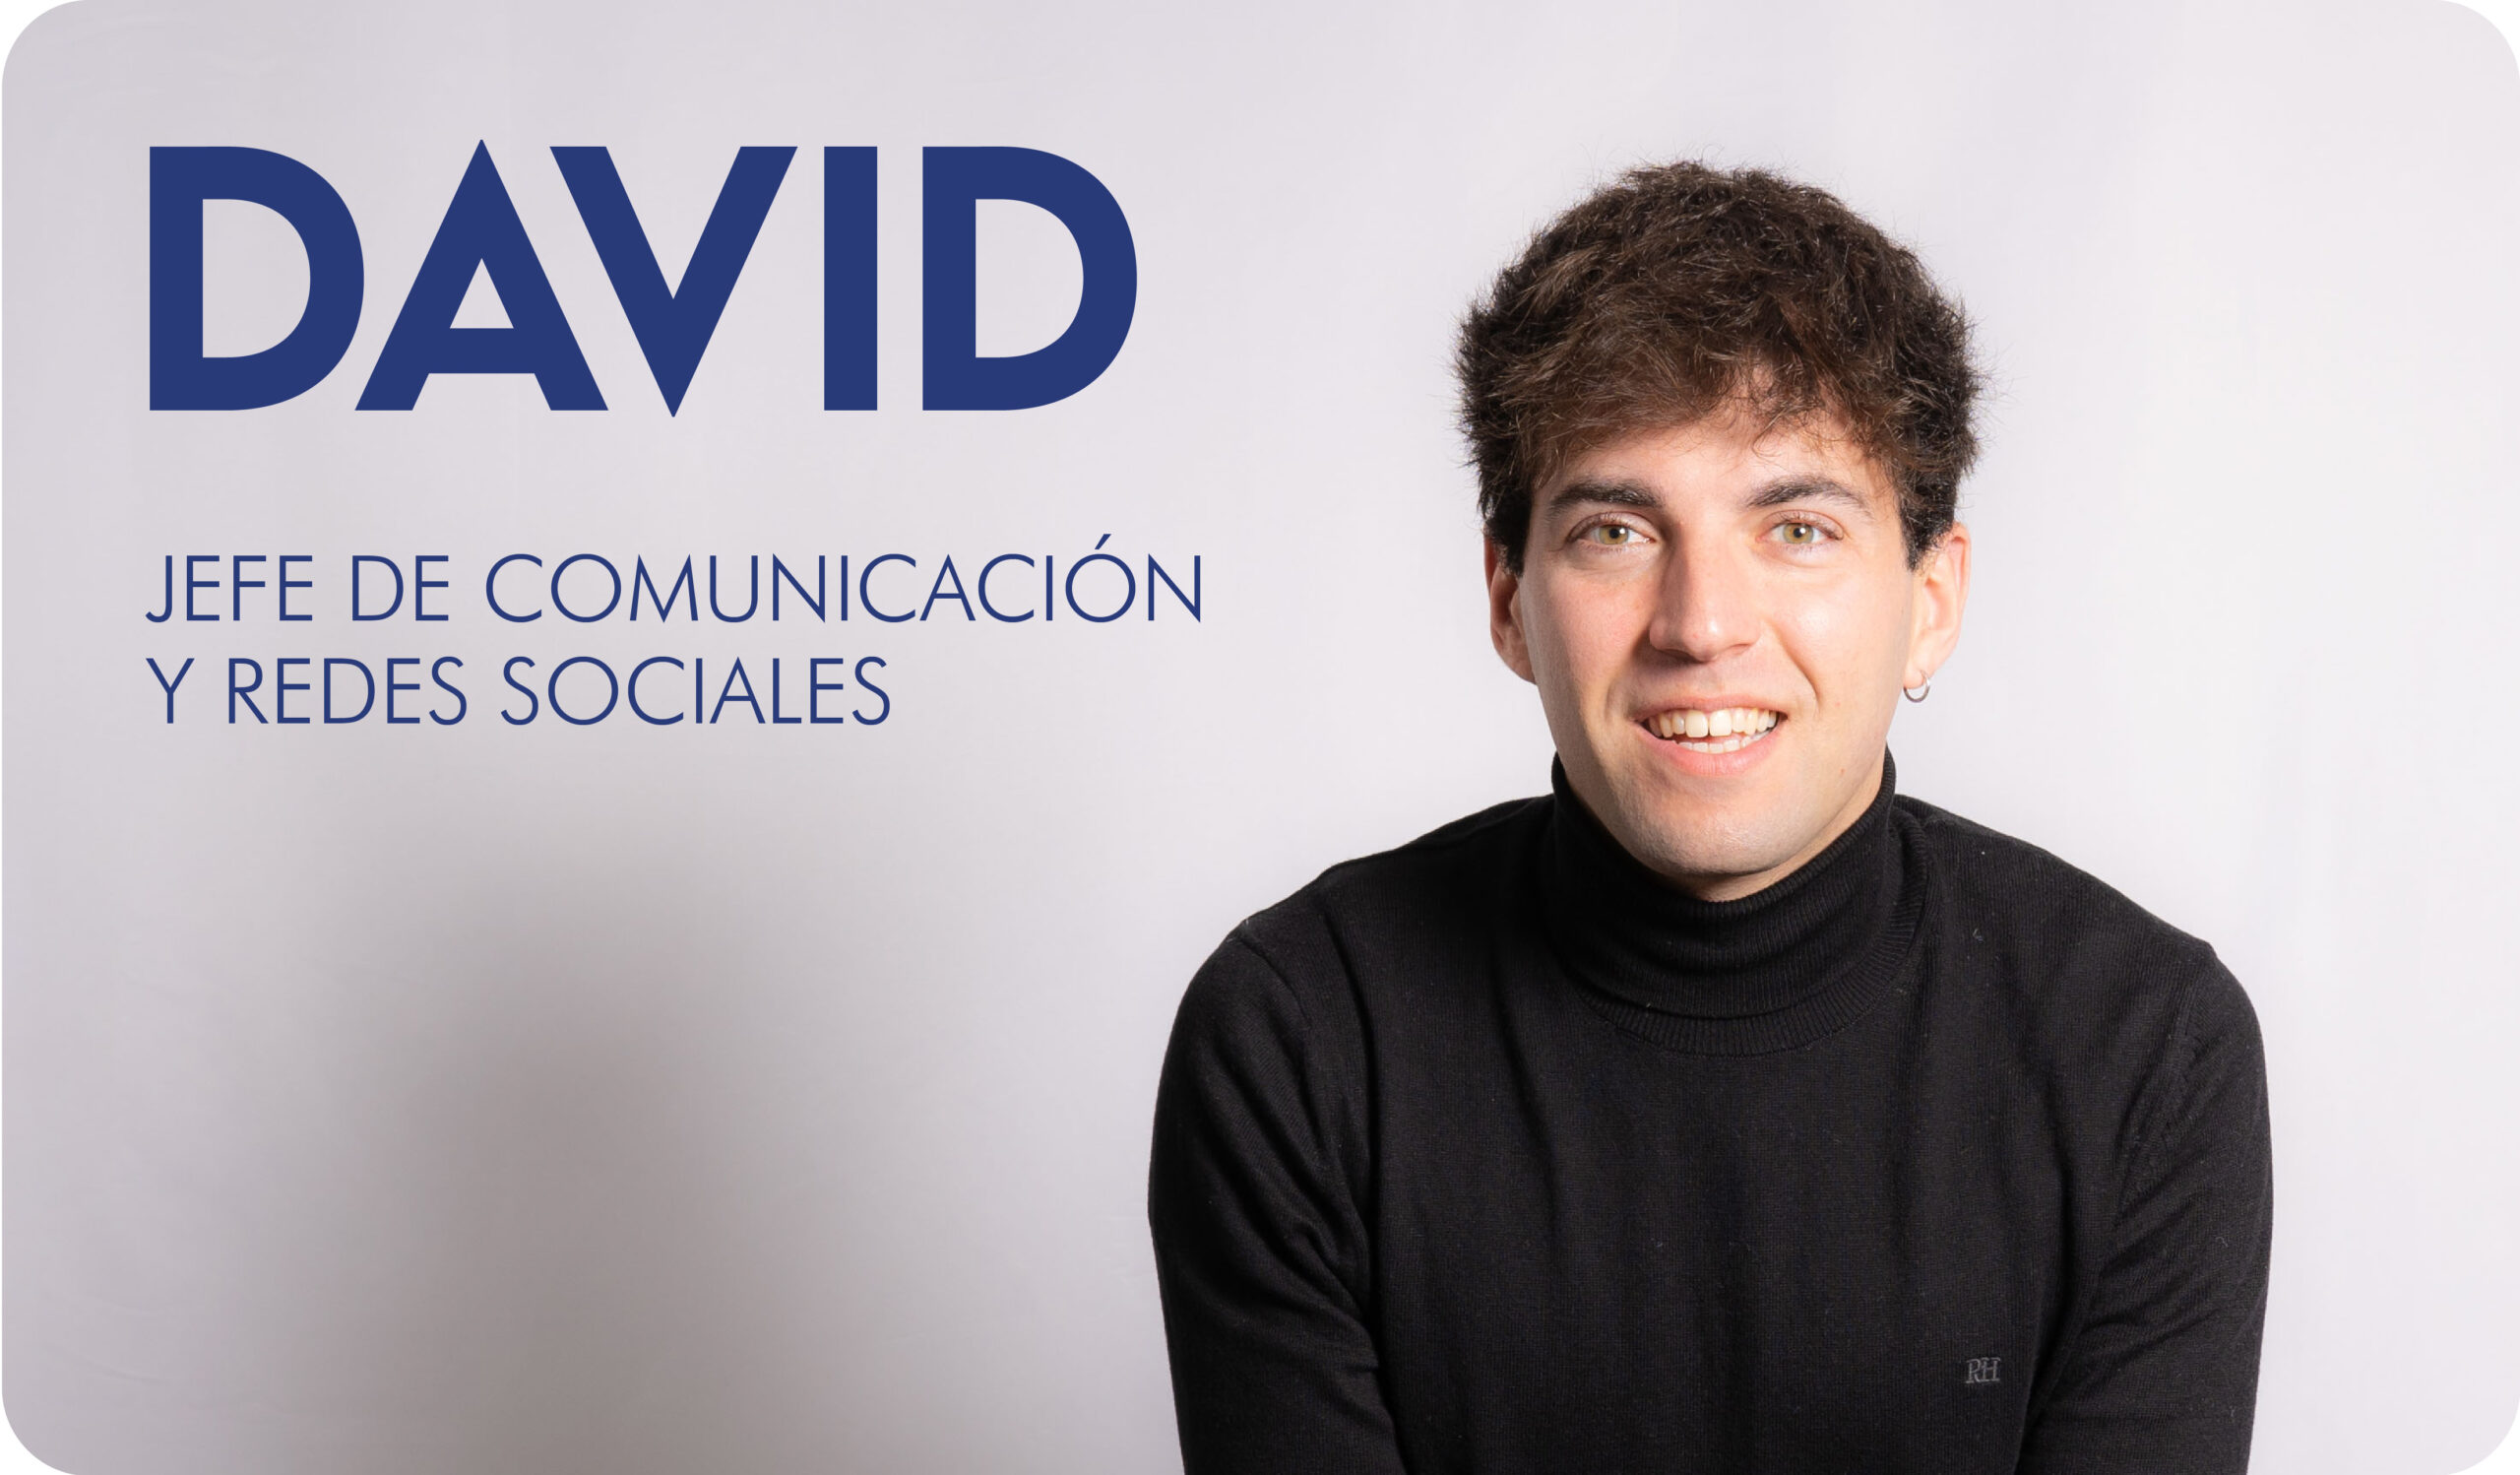 David, jefe de comunicación y redes sociales de la Autoescola Victor.